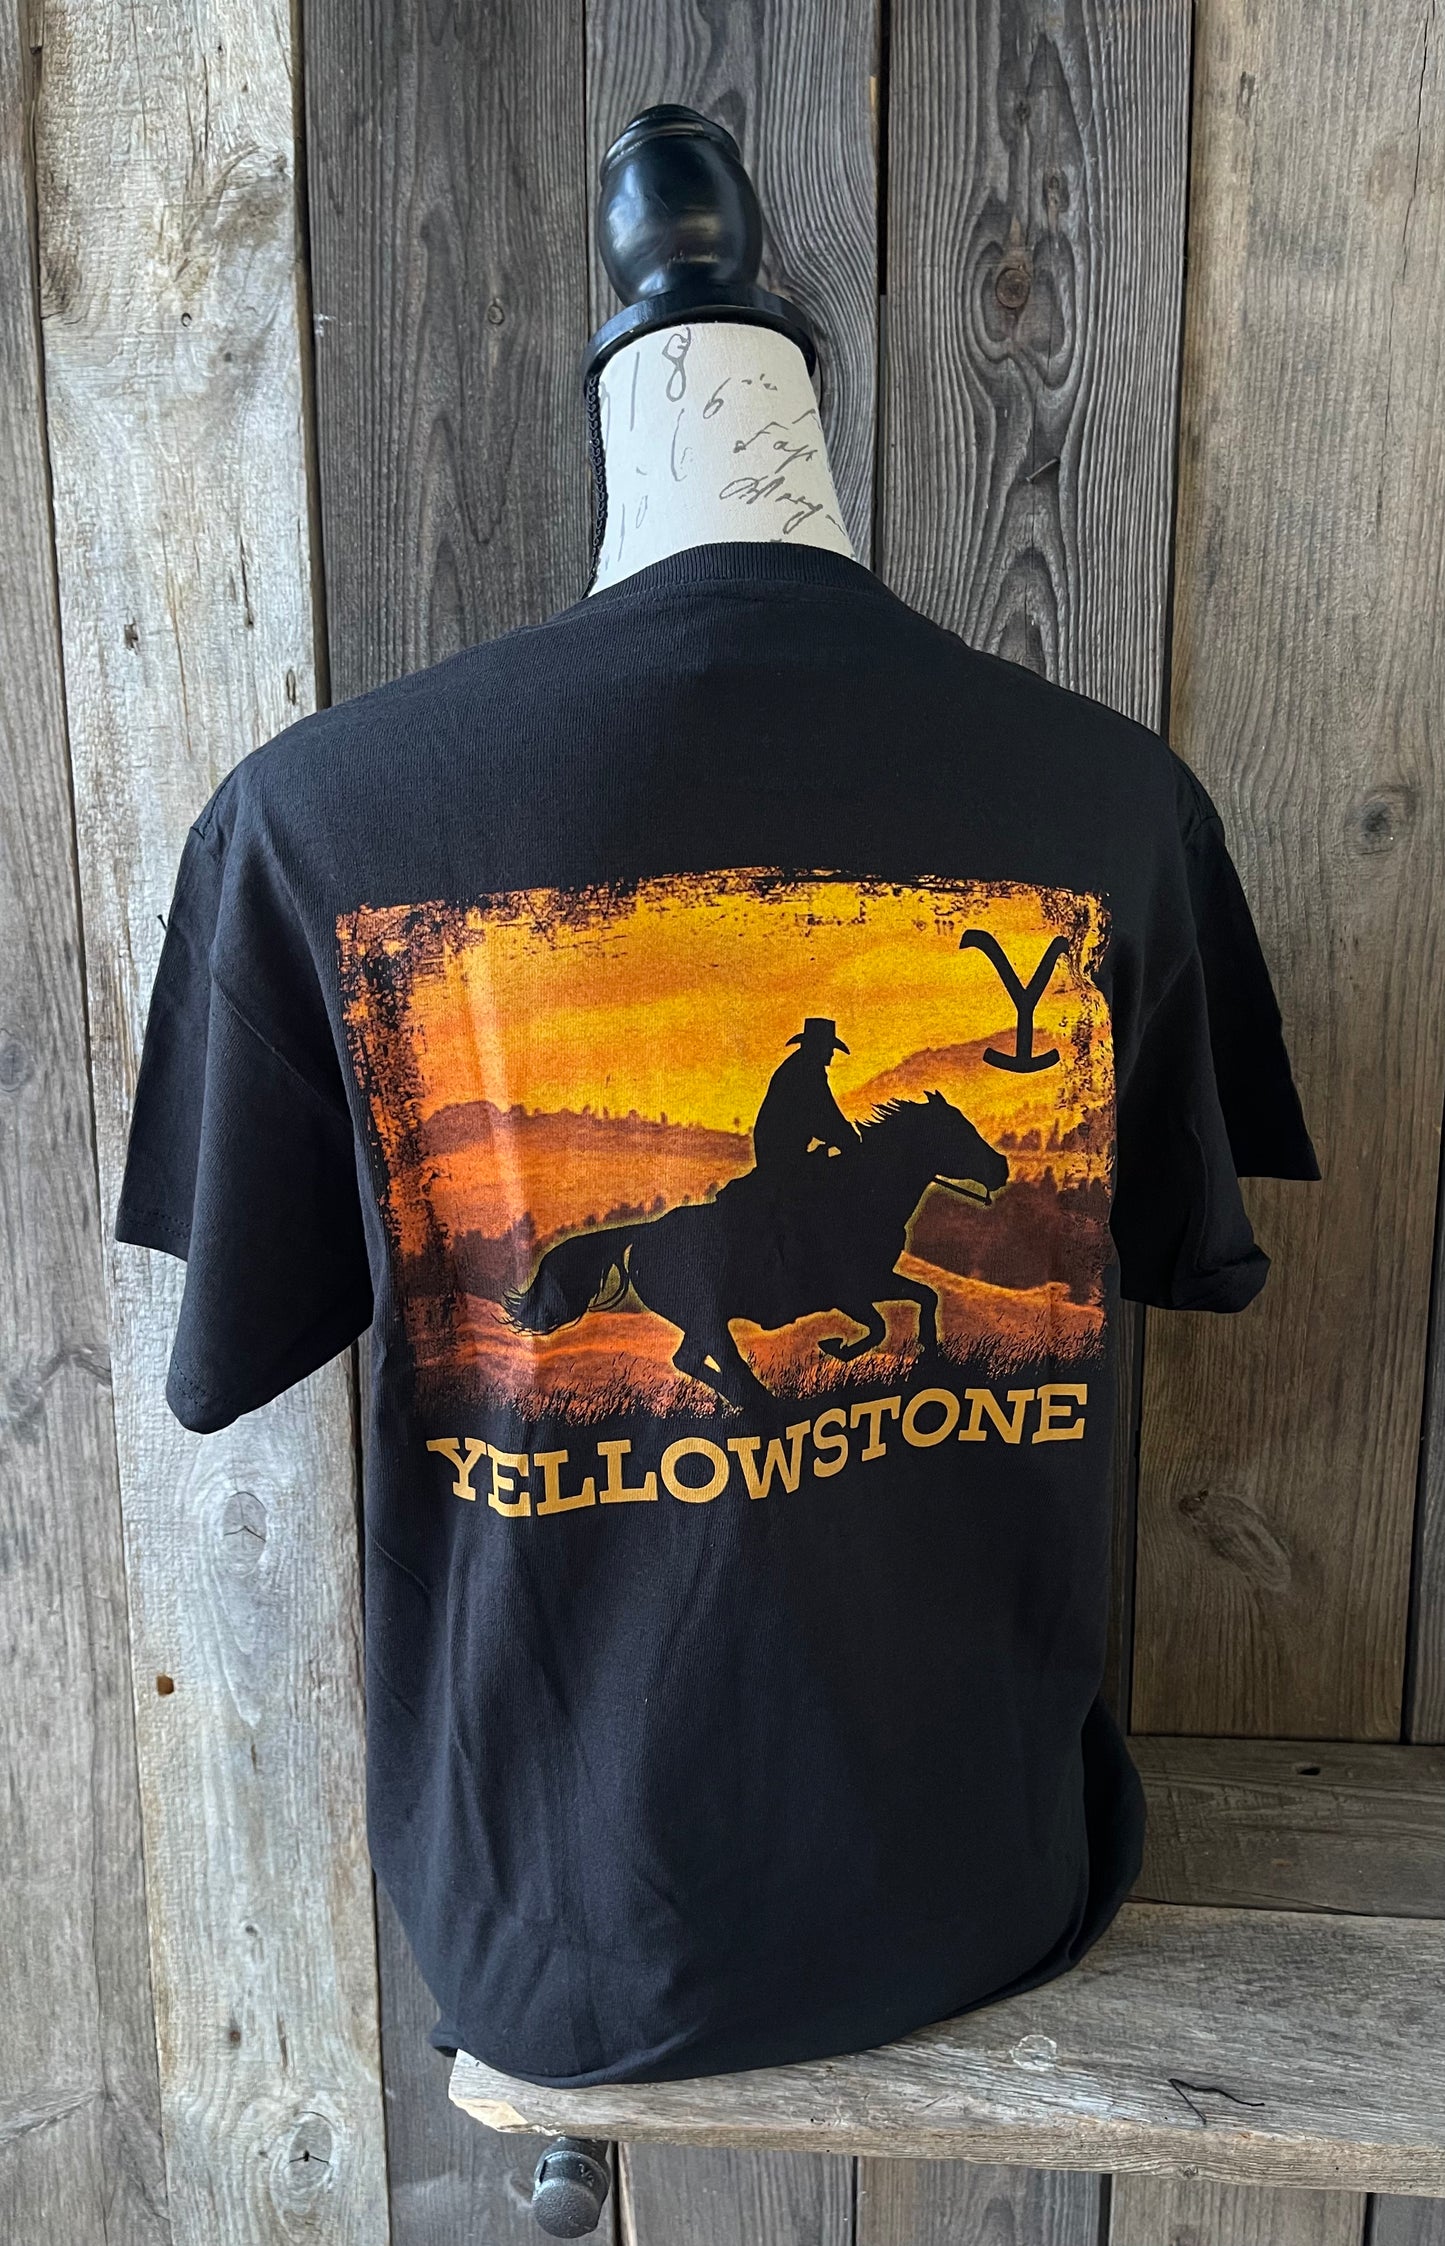 Yellowstone Horse Rider Graphic Tee